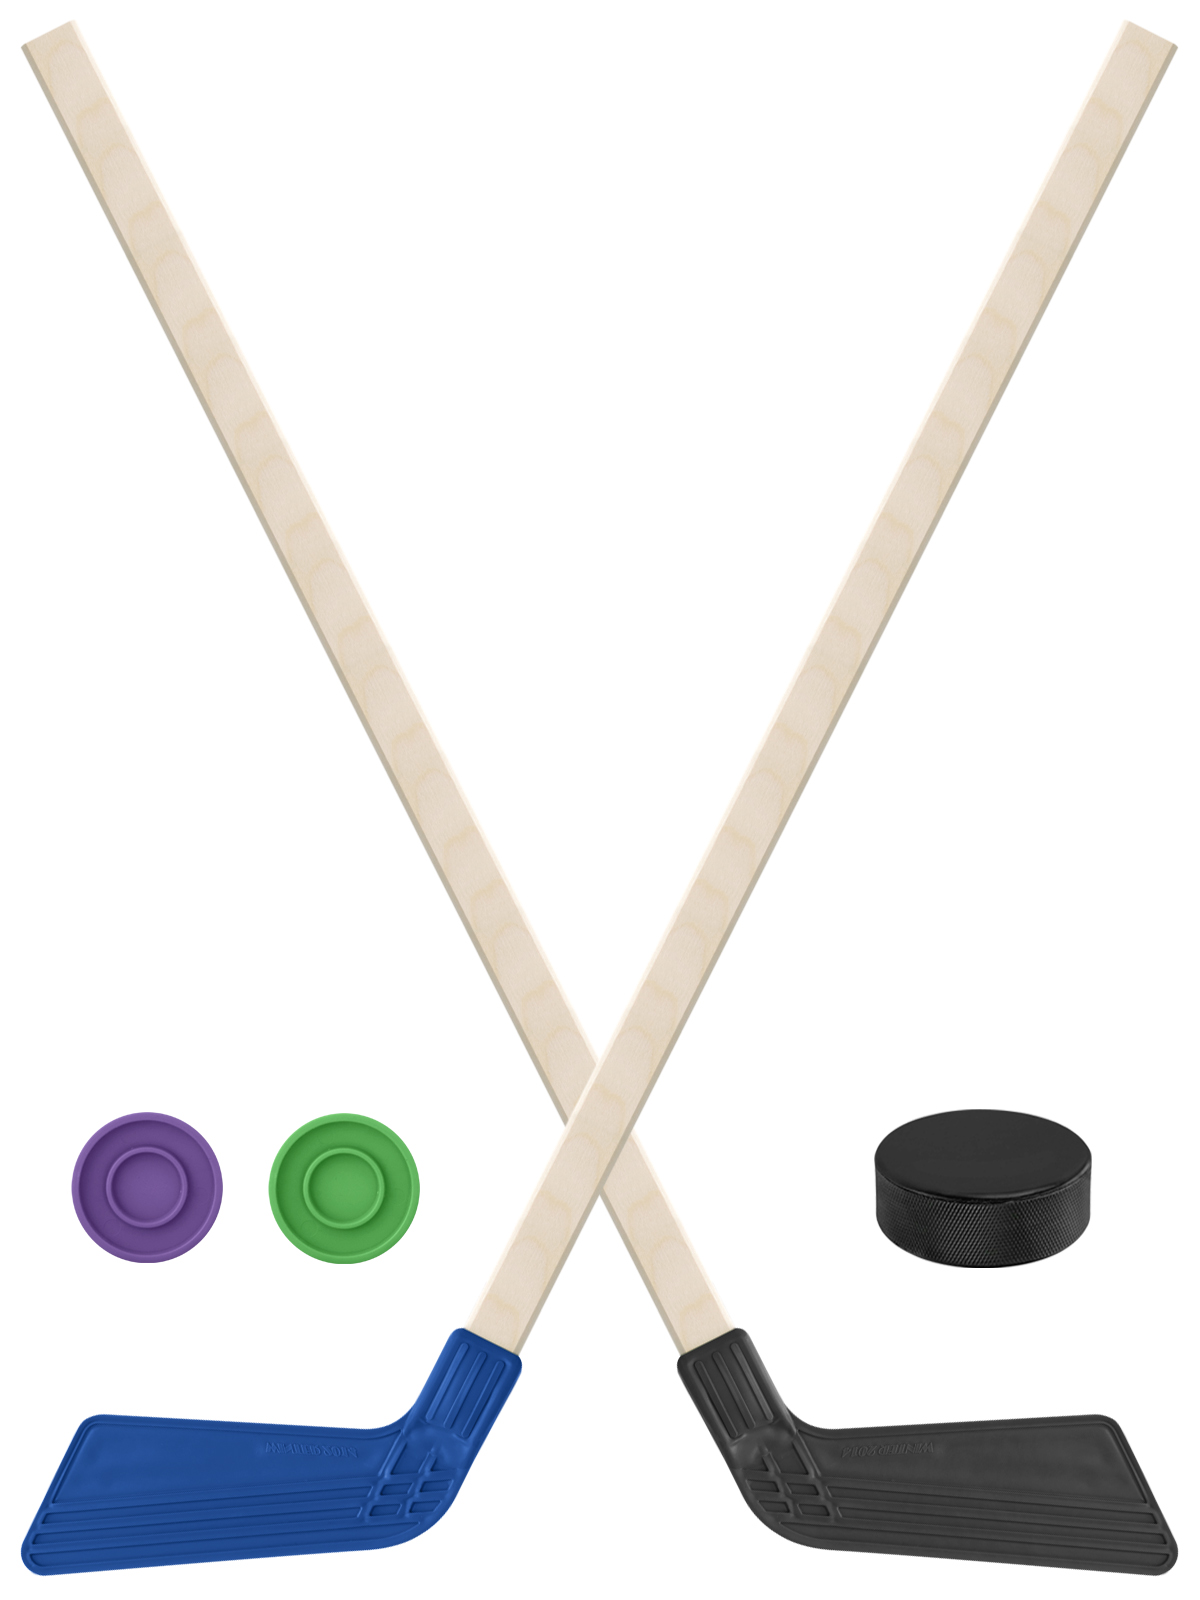 Детский хоккейный набор Задира-плюс Клюшка хоккейная 2шт(син,чёрн)+2шайбы+Шайба 75 мм клюшка флорбольная oxdog ultralight hes 29 uv 92 oval mbc правый